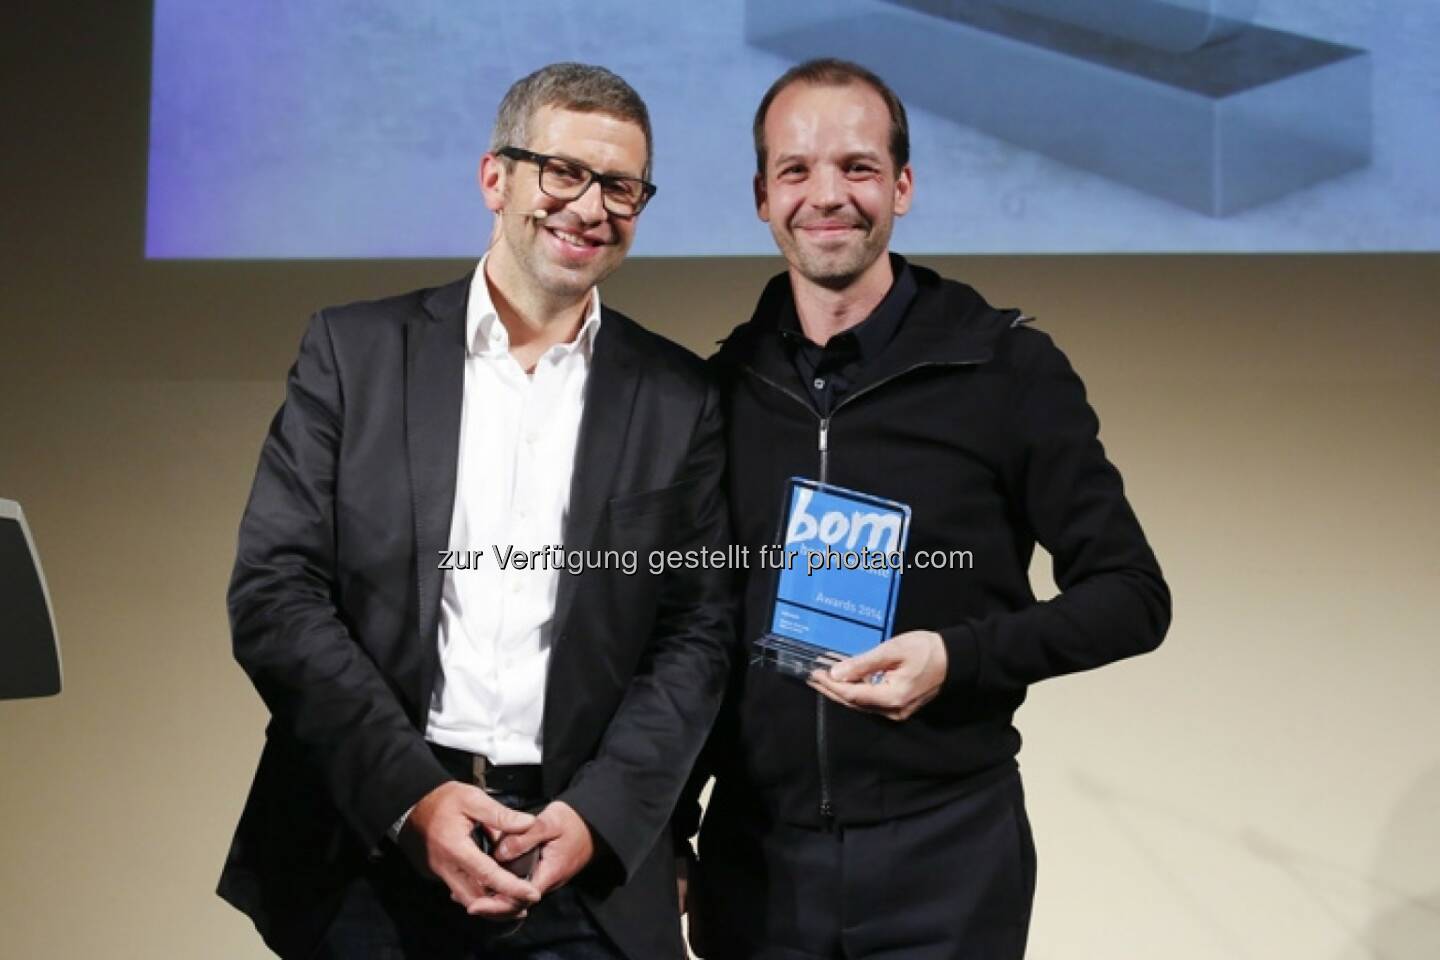 Andre-M. Bajorat (Jurymitglied) und Albert Ortig (Netural-CEO und Roomle-Gründer) - Netural GmbH gewinnt den Best-of-Mobile Award 2014 (Bild: Haymarket Media)